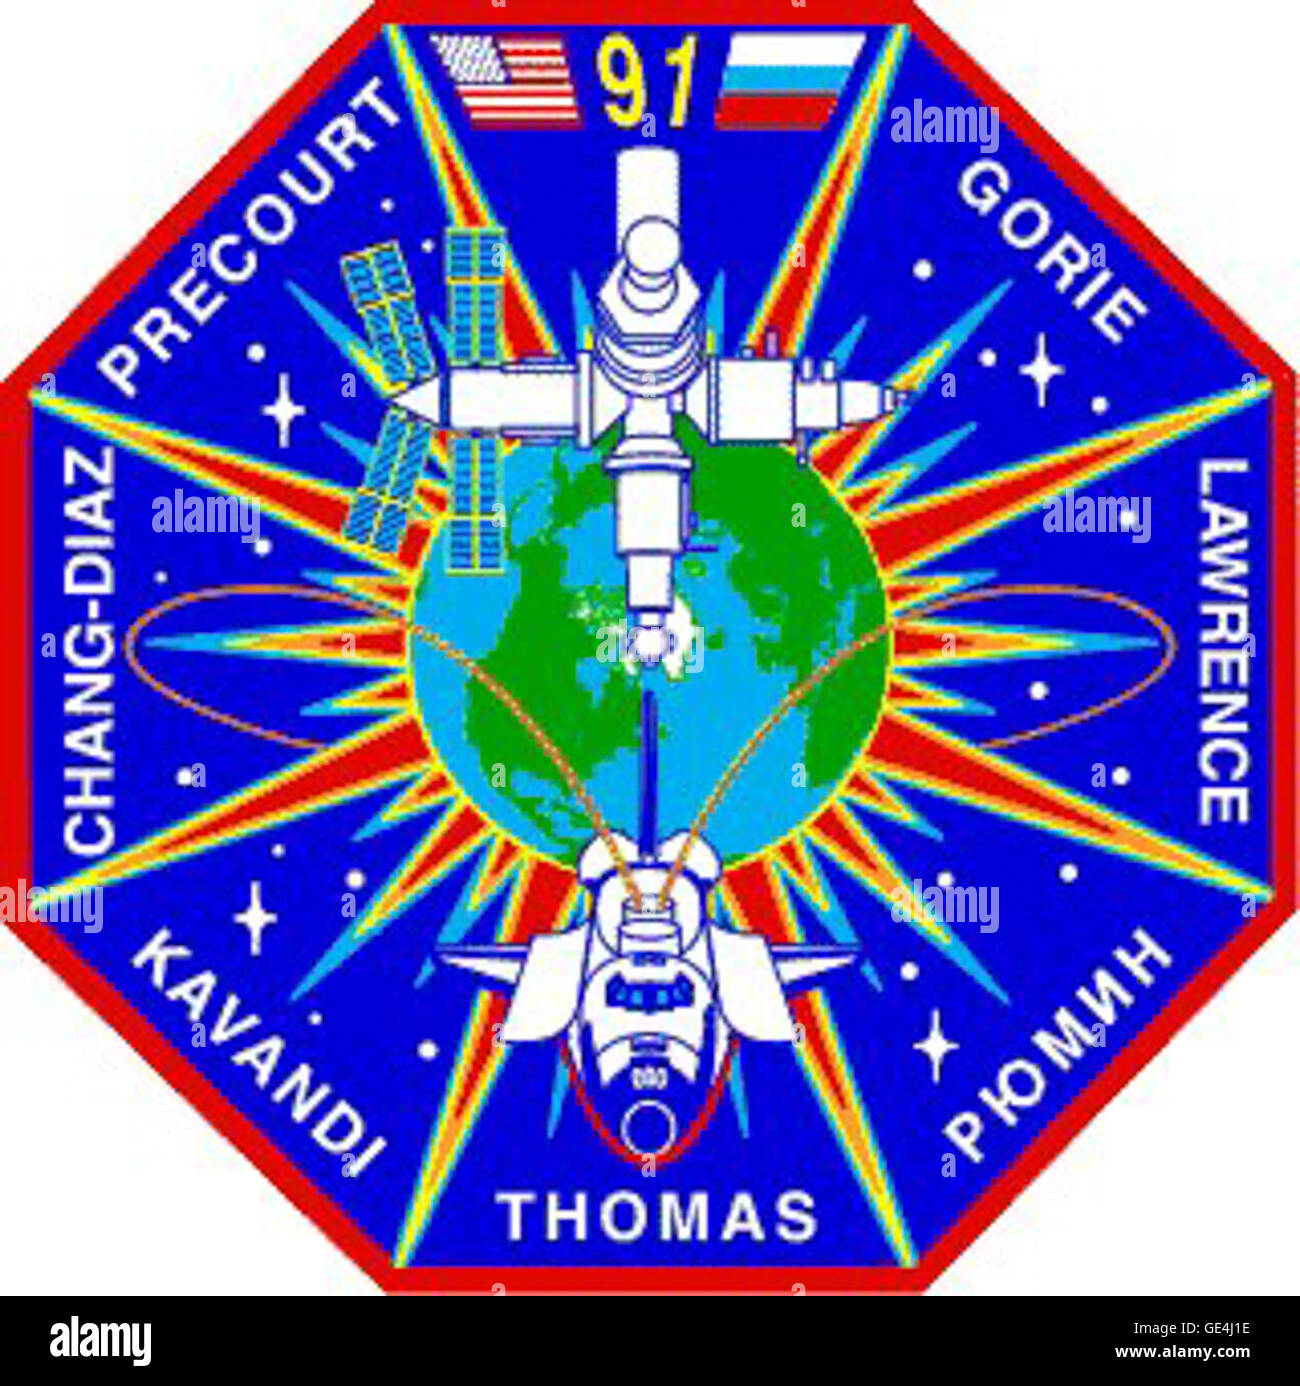 Lancement : le 2 juin 1998, 6:06:24 HAE Landing : 12 juin 1998, 2:00:18 HAE, centre spatial Kennedy, Floride : l'équipage de la navette spatiale Discovery : Commandant Charles J., pilote Precourt Dominic L. Pudwill Gorie, spécialistes de mission Wendy B. Lawrence Franklin, R. Chang-Diaz, Janet L. Kavandi et Valery Victorovitch Ryumin. STS-91 arrimé à l'ISS et conduit les membres de l'équipage, l'équipement et des fournitures. Andy Thomas est devenue officiellement membre de l'équipage de Discovery, l'achèvement de 130 jours de vie et de travail à bord de Mir. Le transfert s'est terminé un total de 907 jours passés par sept astronautes américains à bord de la Russie Banque D'Images